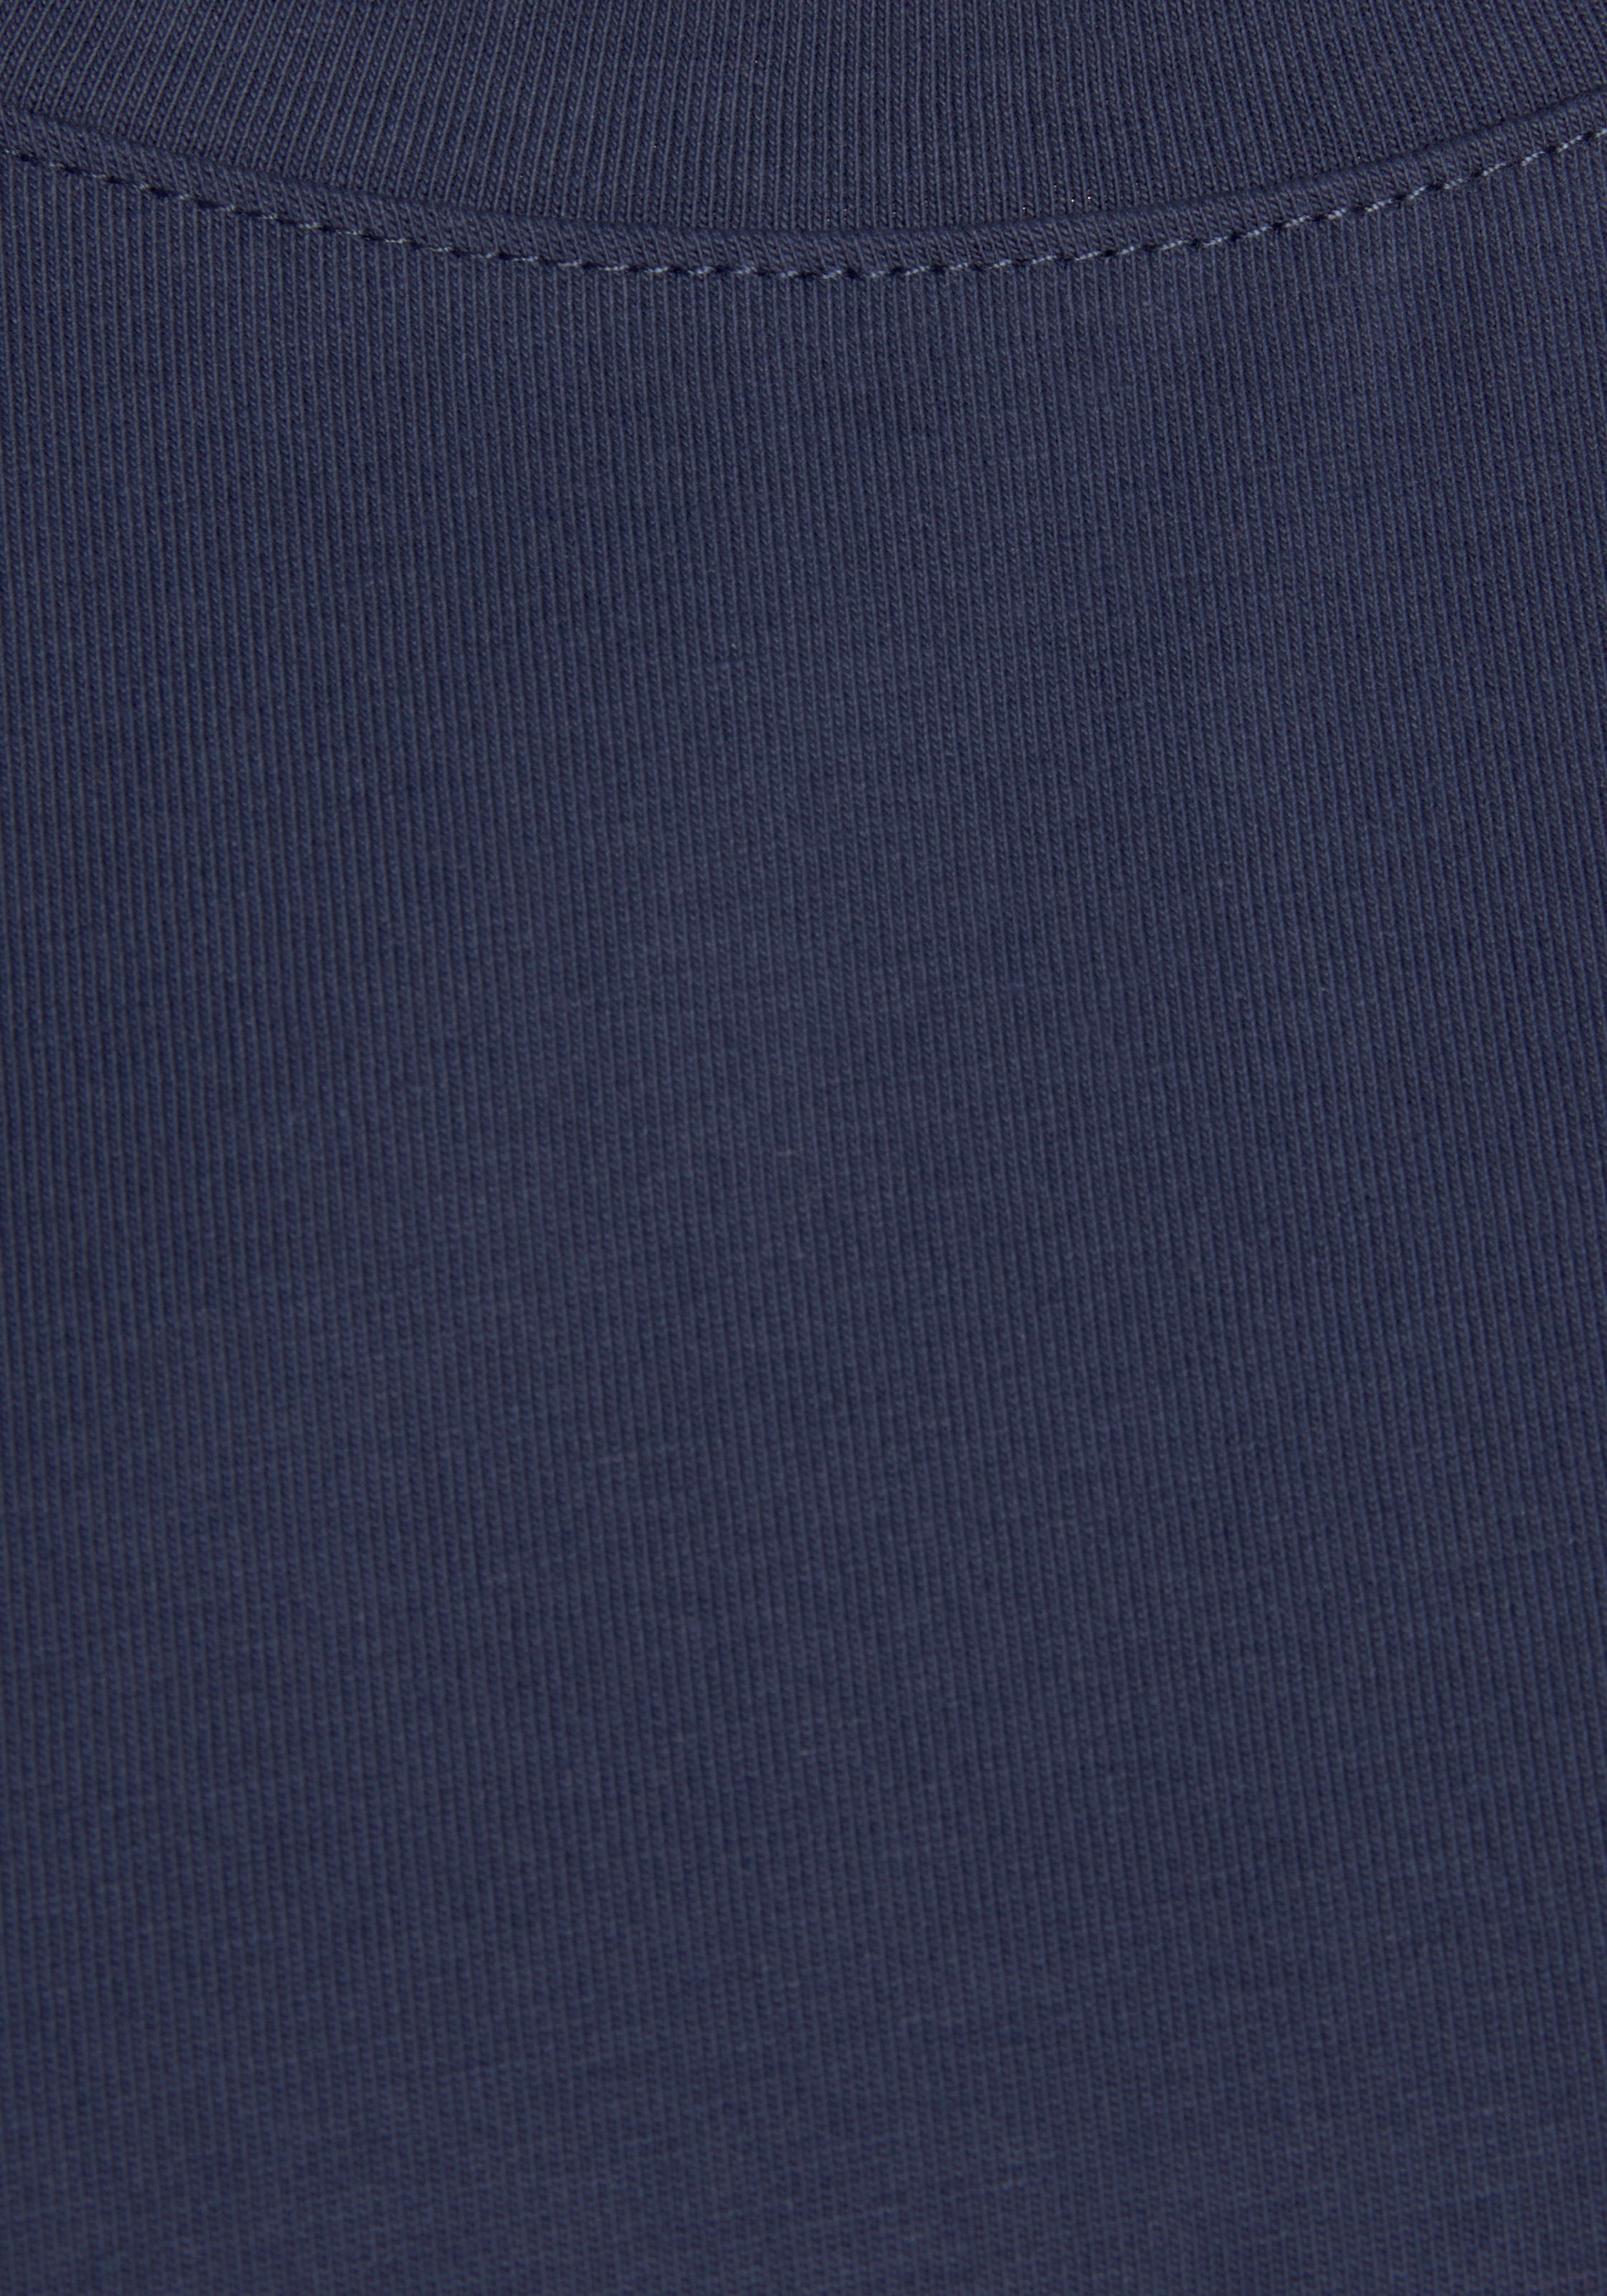 H.I.S T-Shirt mit Ärmelaufschlag im Loungewear maritimen navy Stil